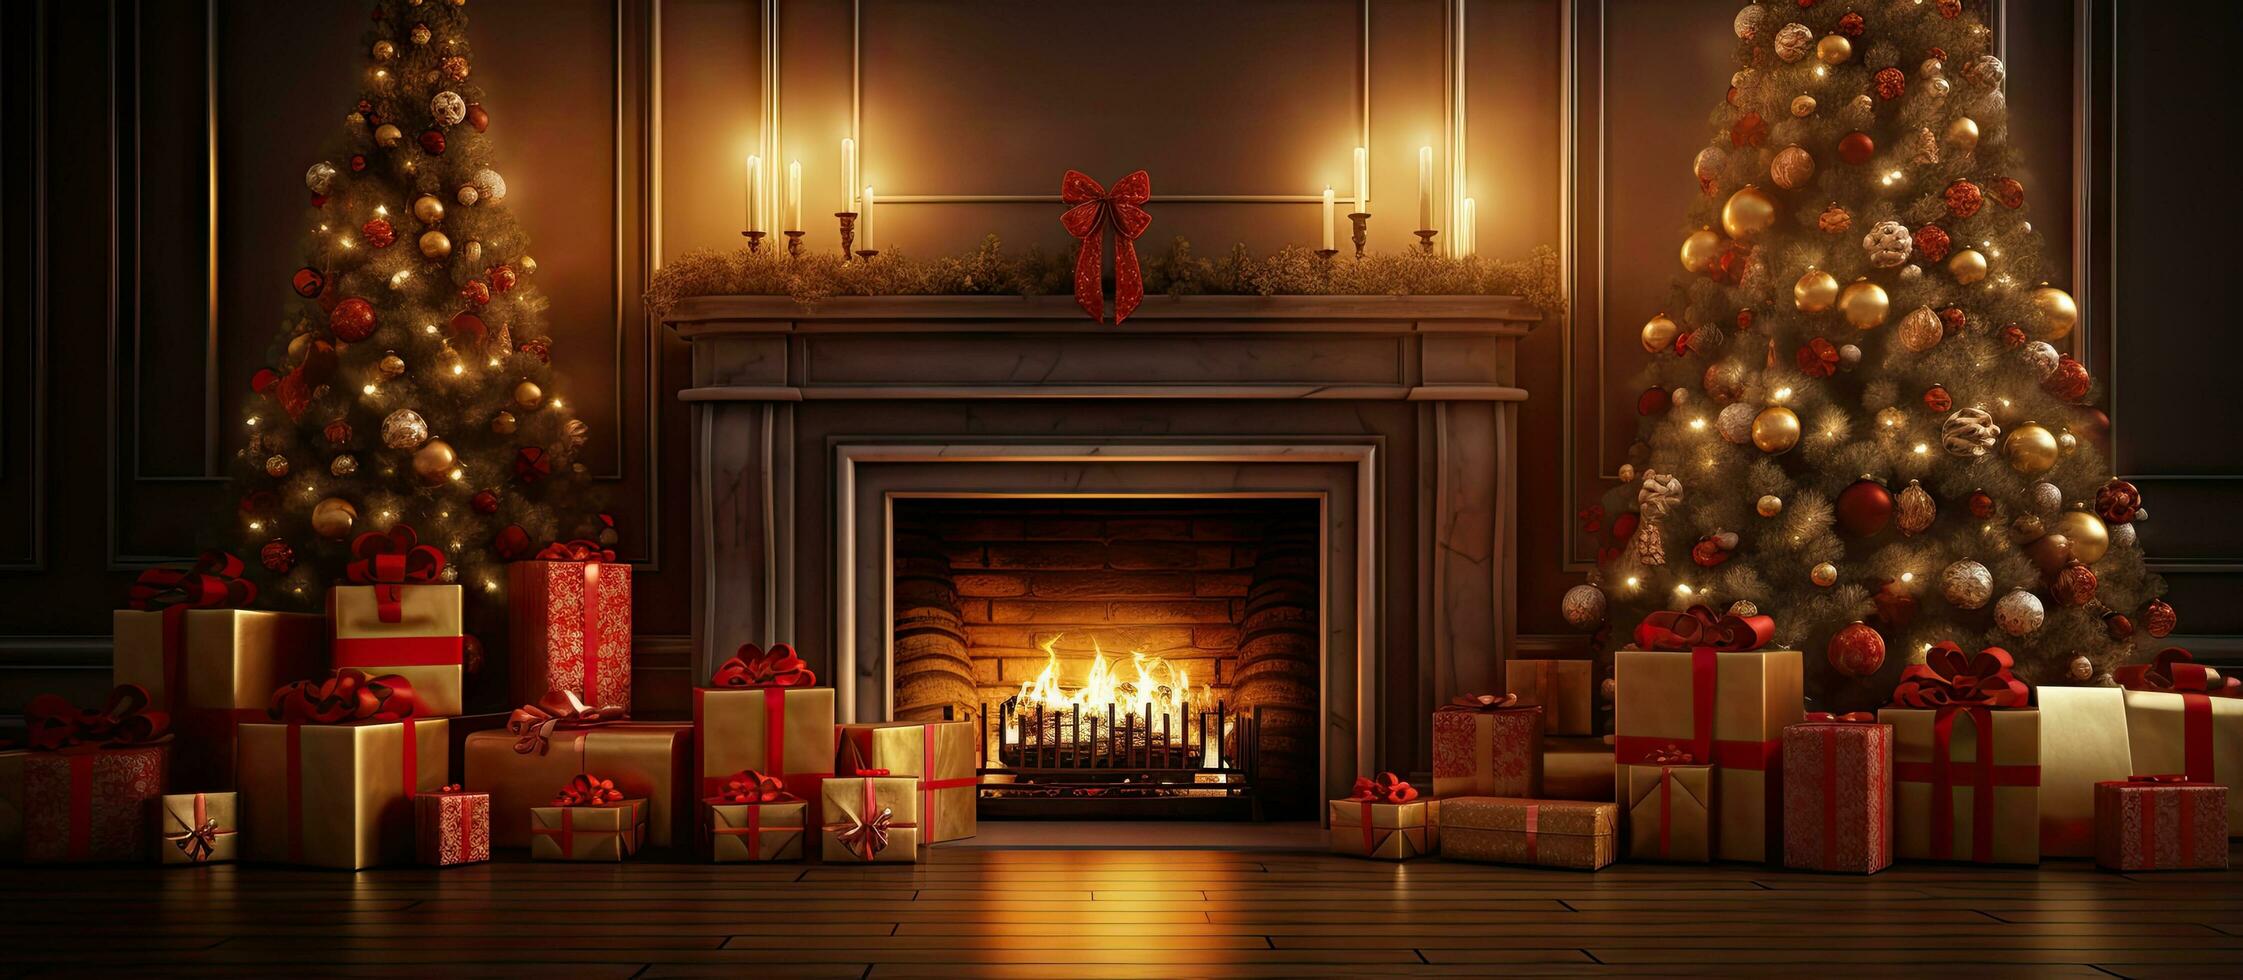 digital illustration av glad jul bakgrund visa upp gåva jul träd och öppen spis i en dekorerad rum foto